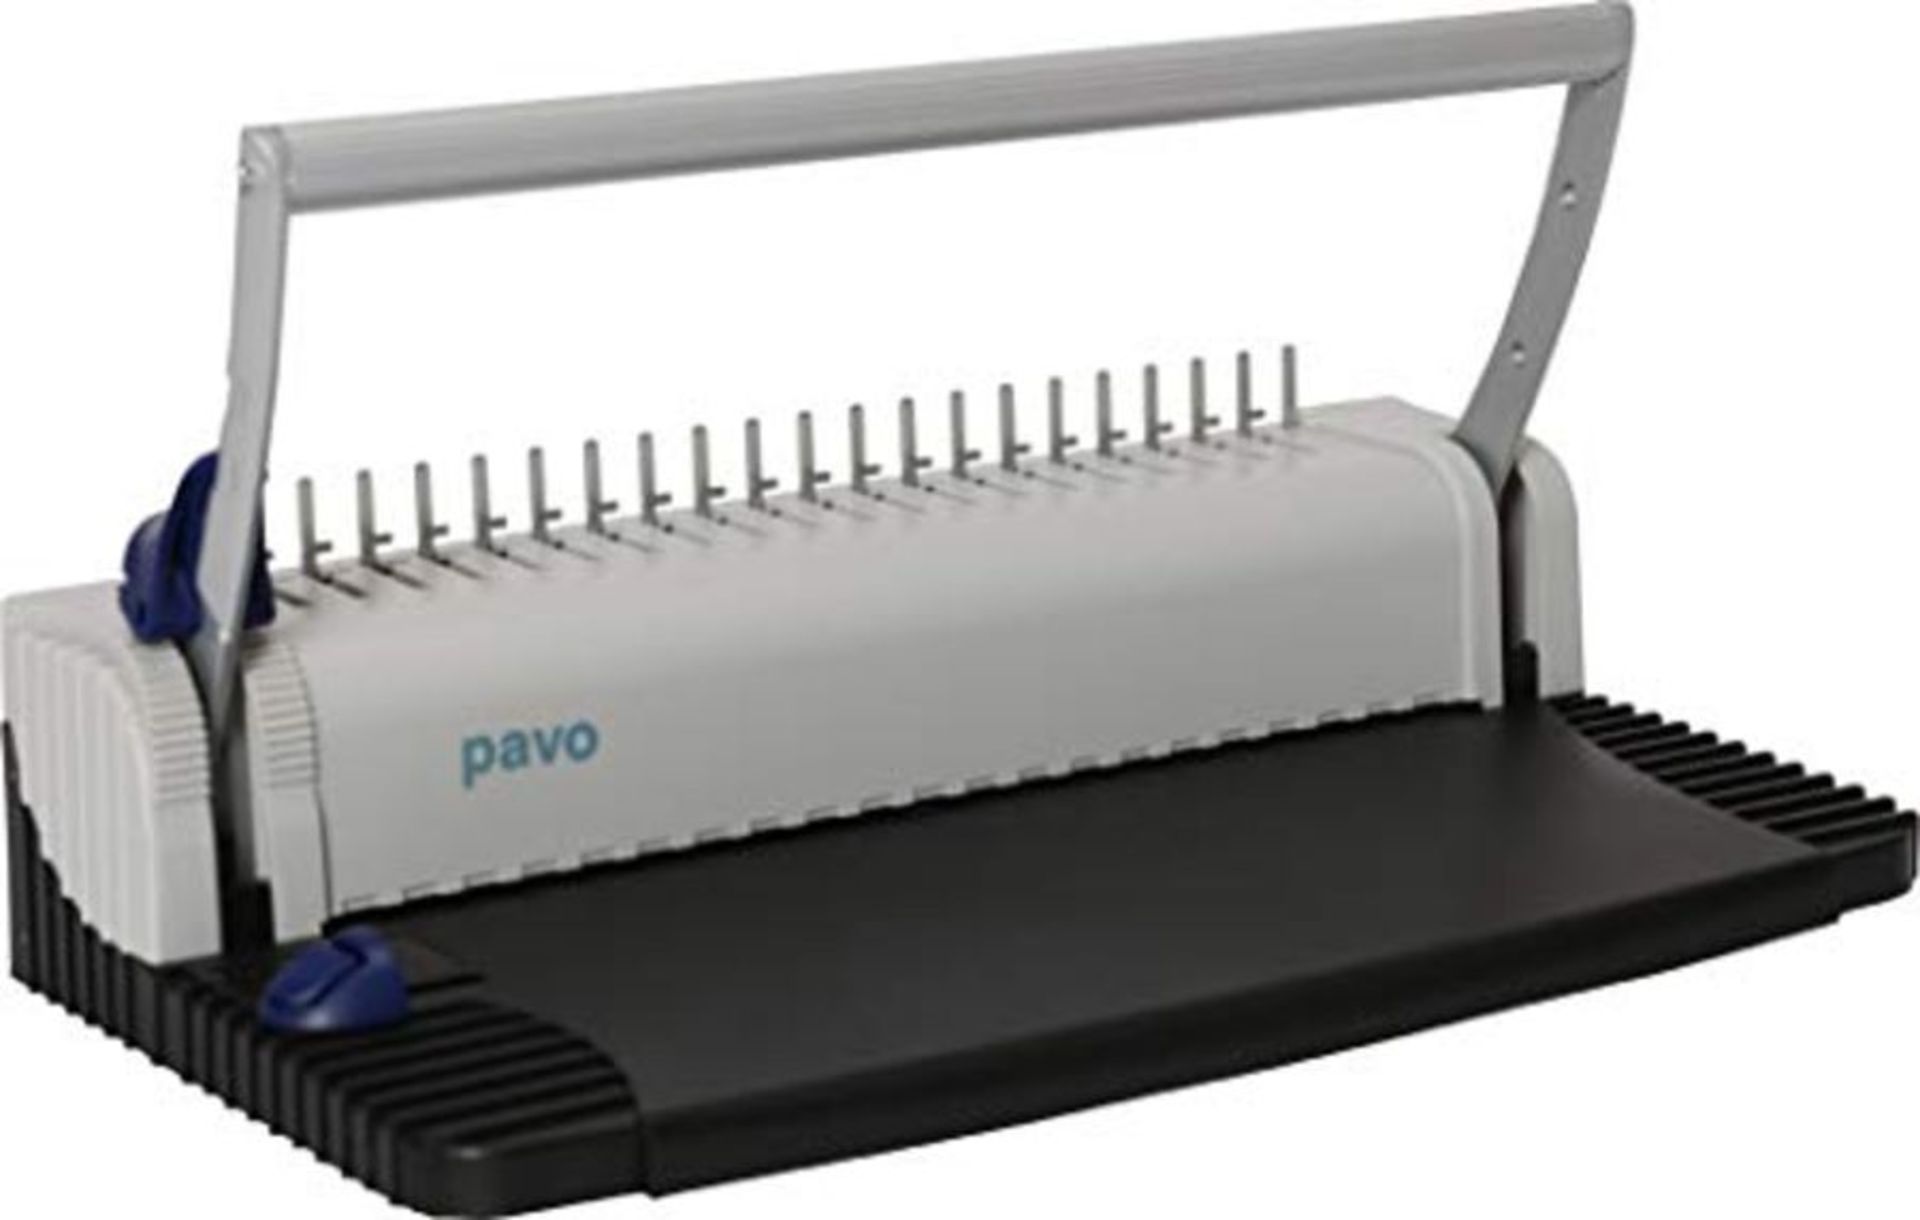 Pavo Smartmaster 2 - Rilegatrice a dorsi plastici, Kit per rilegatrice incluso, Nero/G